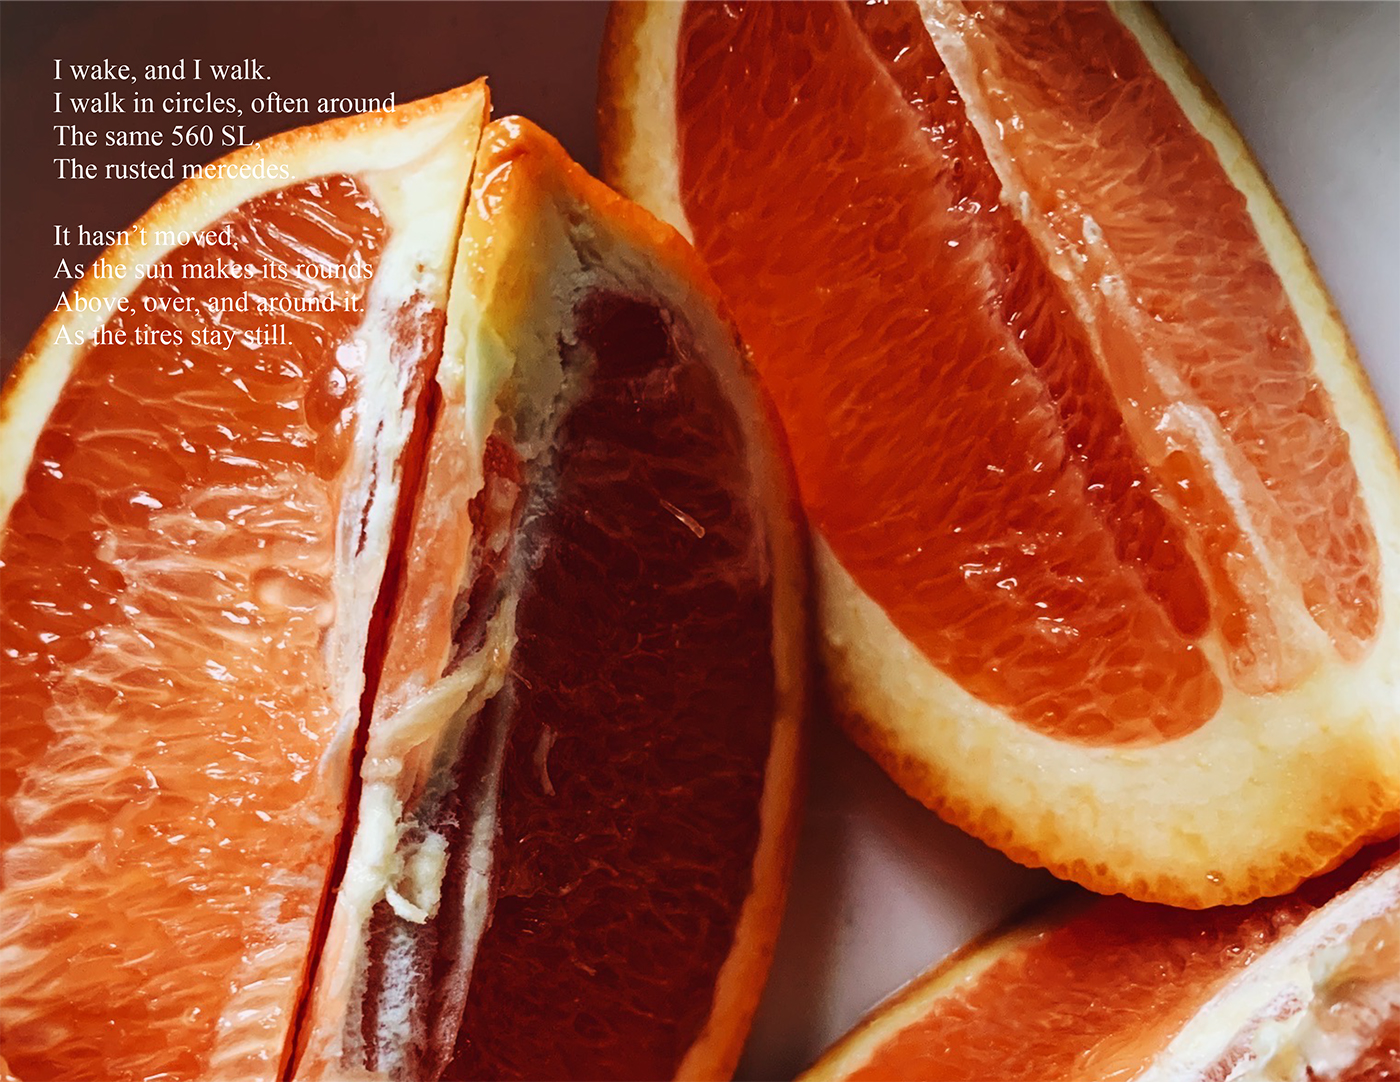 photo of orange slices